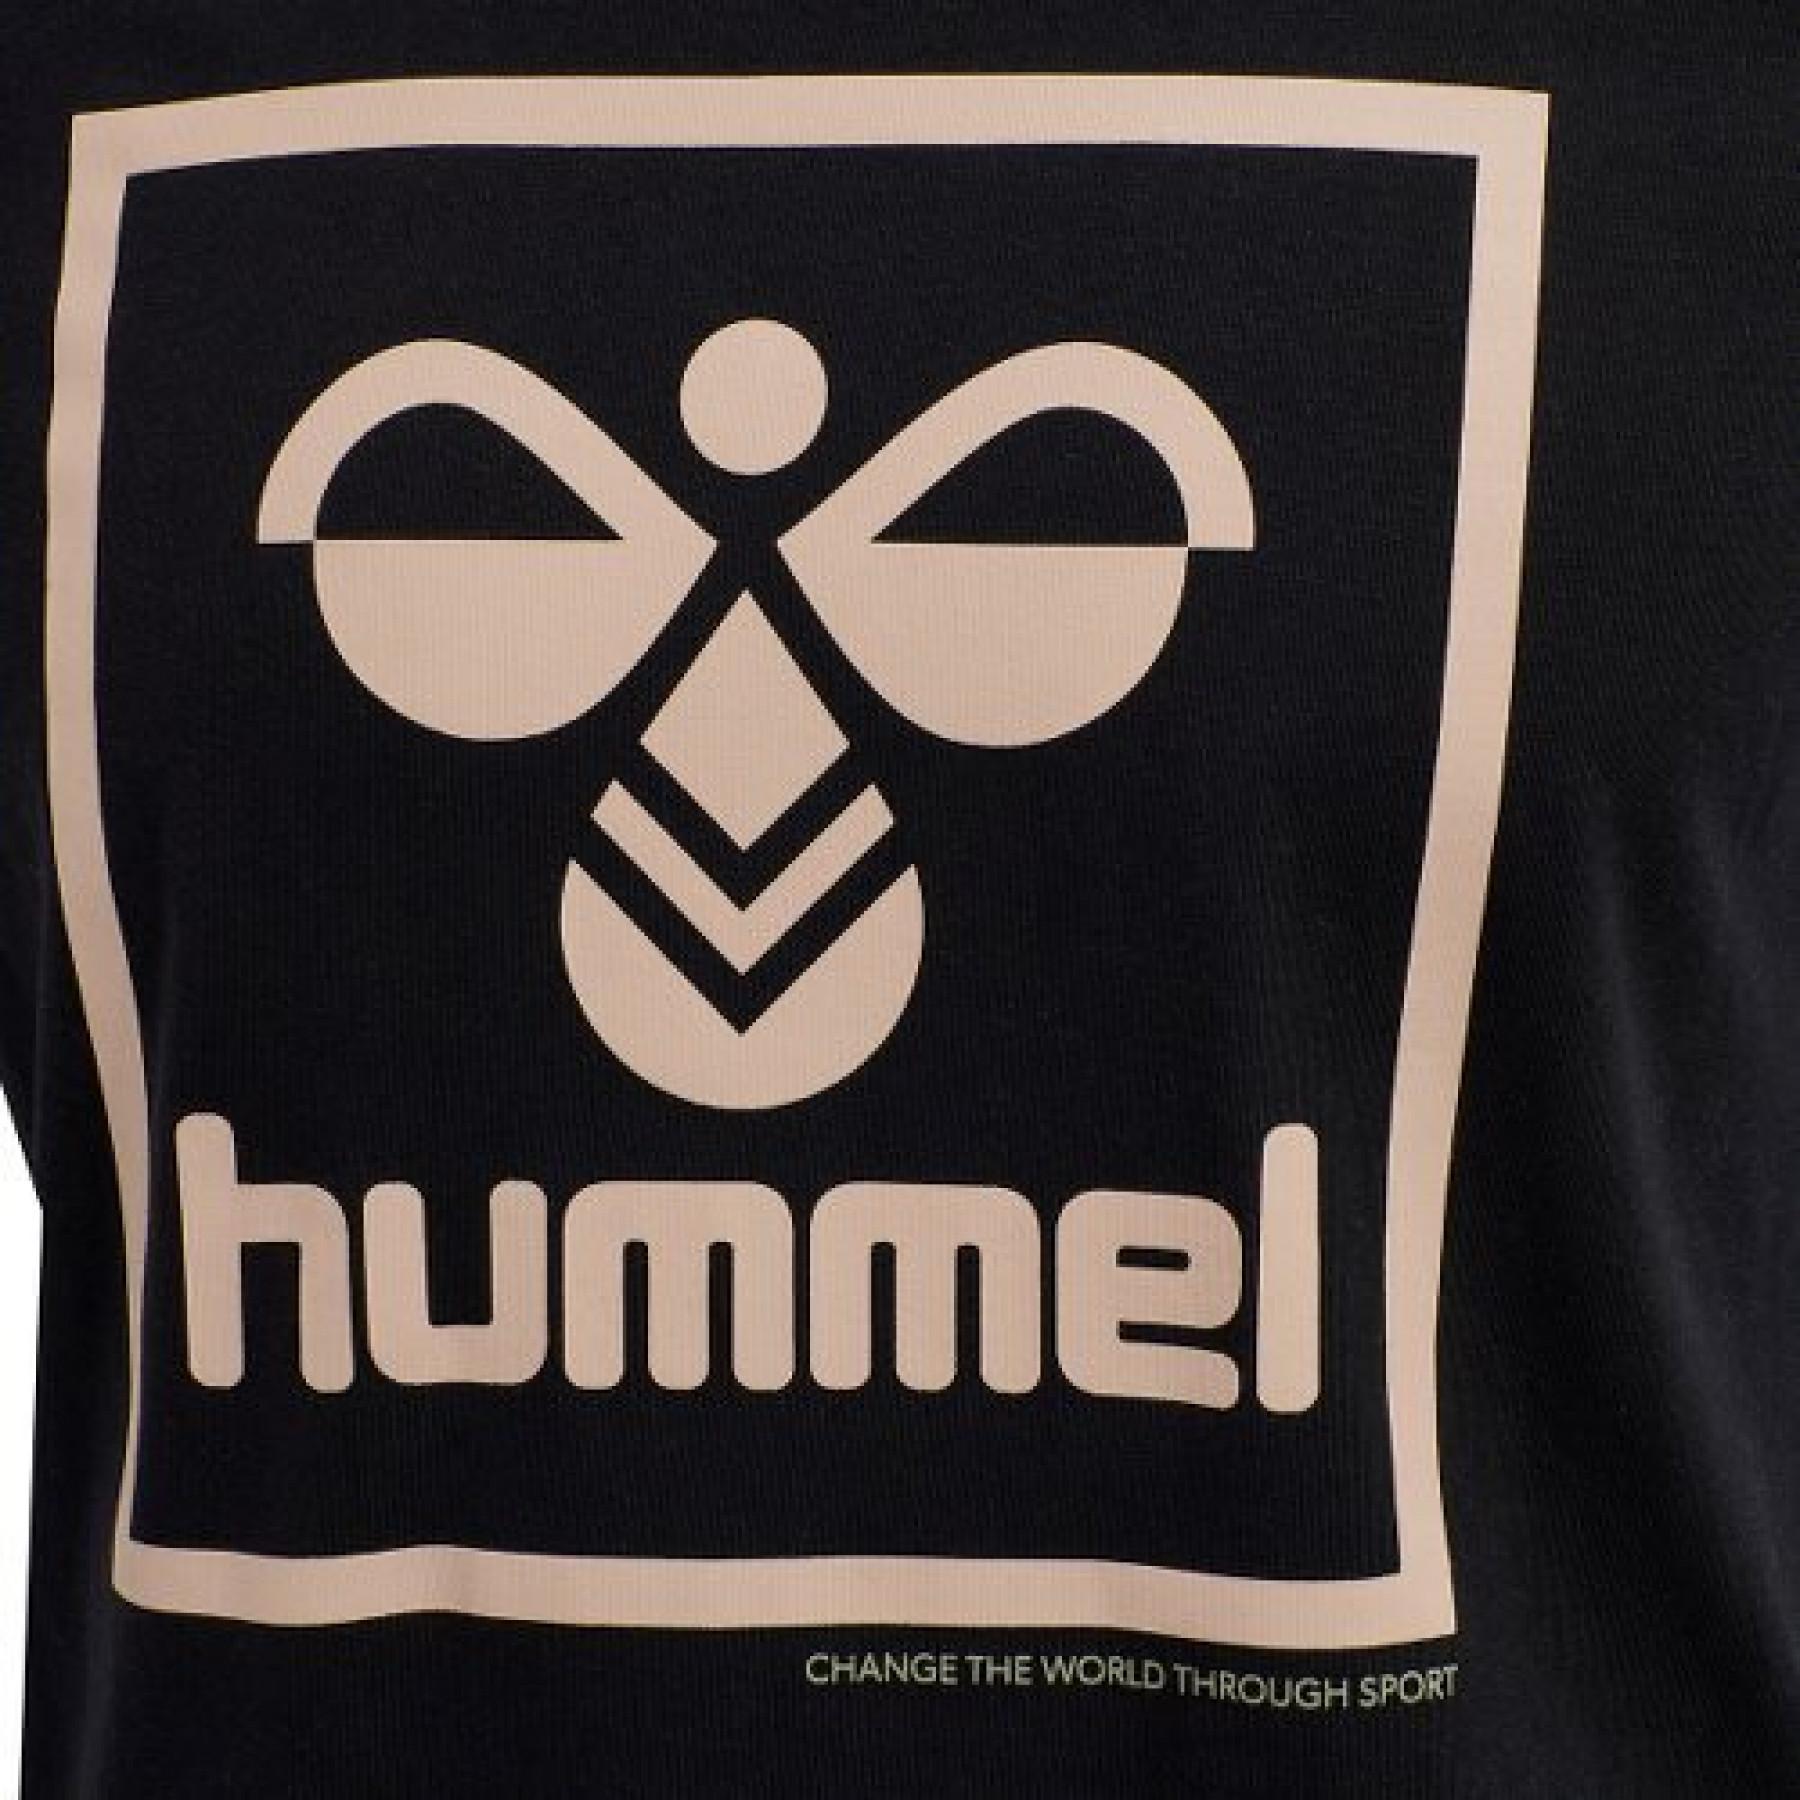 Kurzarm-T-Shirt Hummel